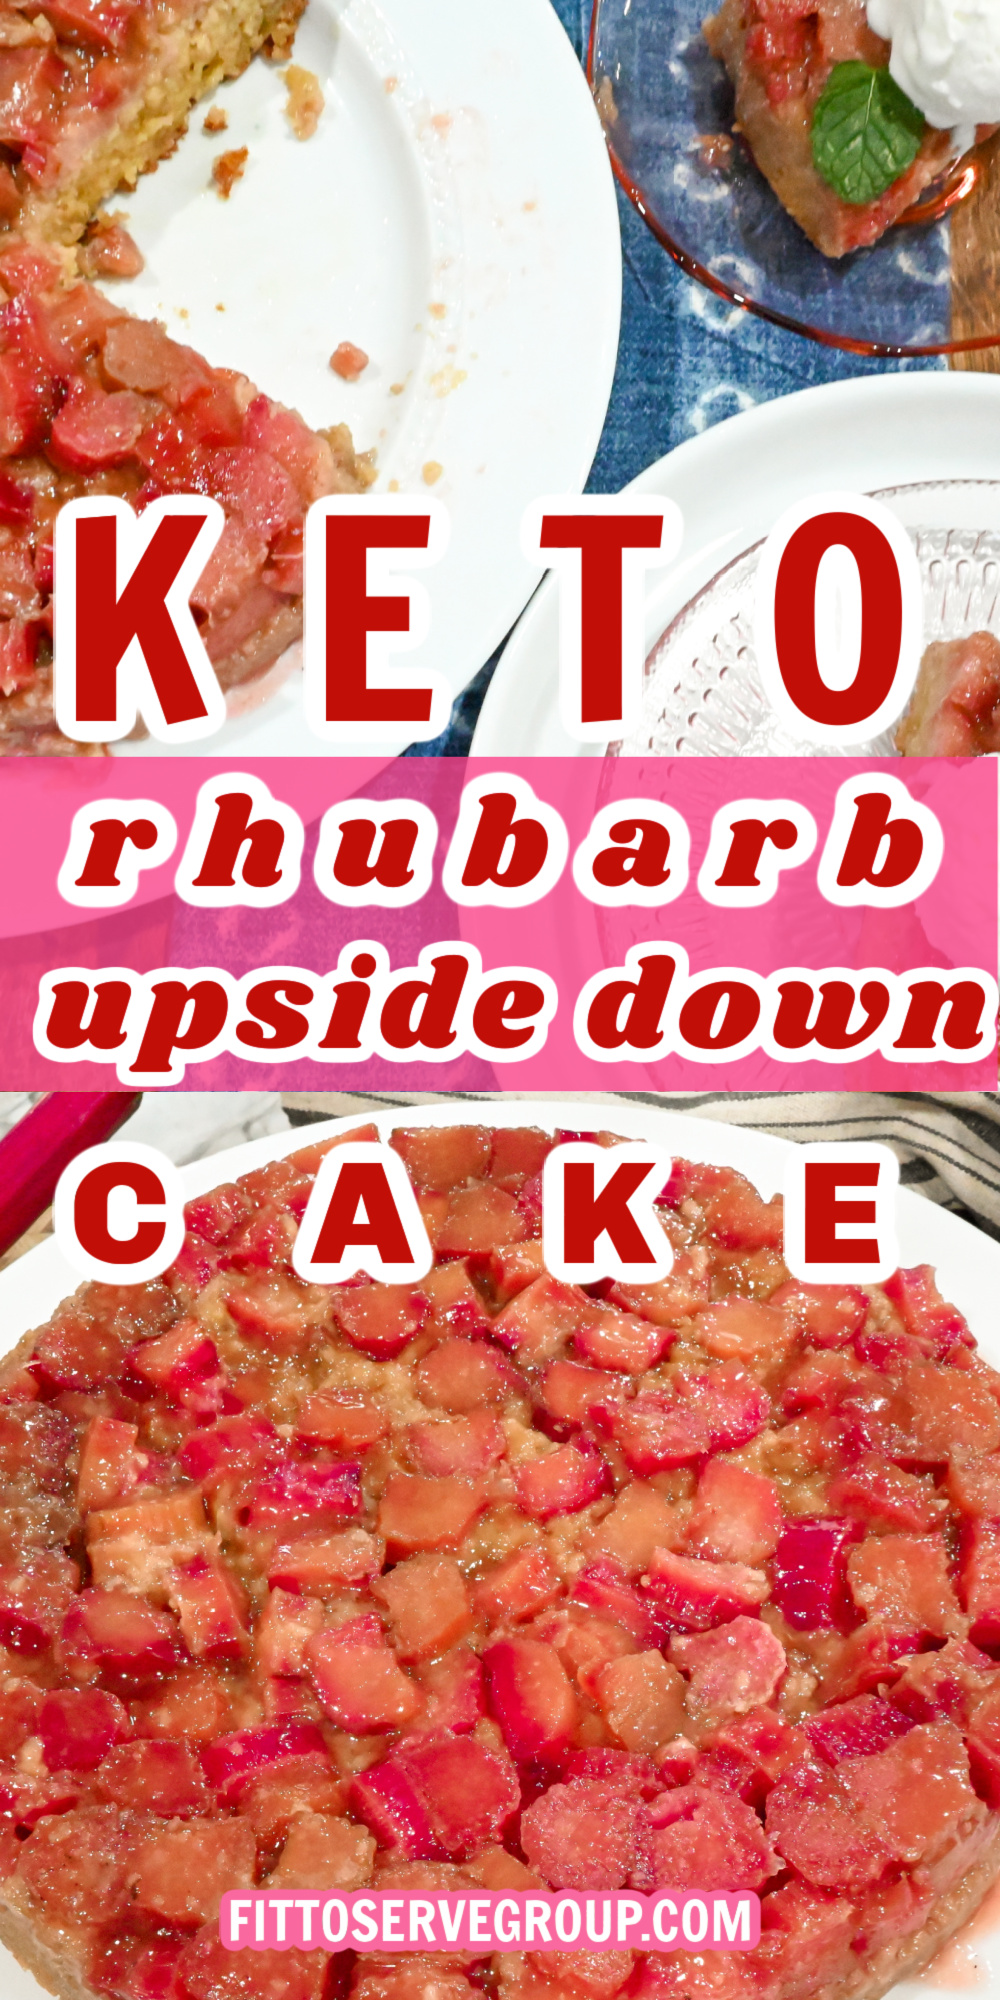 keto rhubarb upside down cake